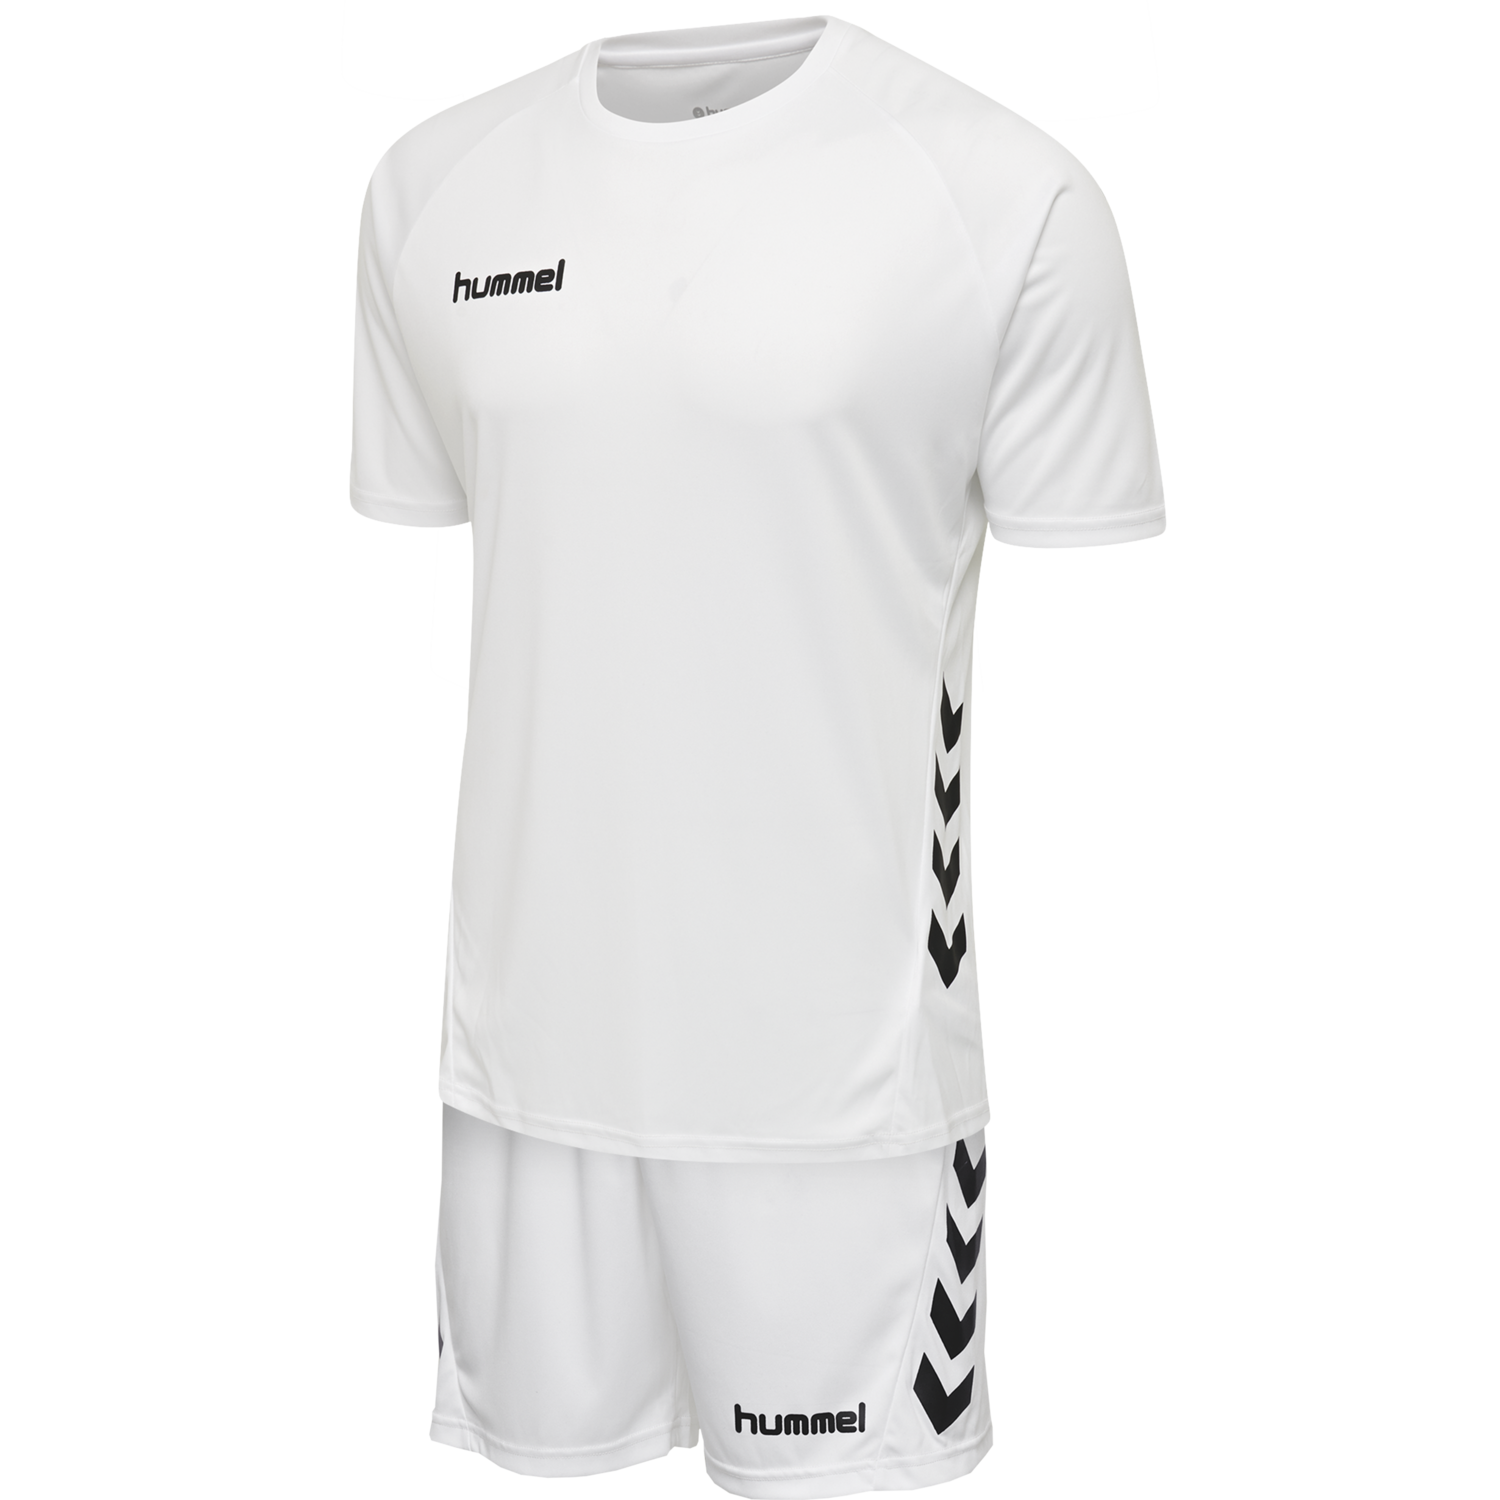 Details about   Hummel Football Soccer Mens Sports Training Short Sleeve SS Tee Shirt Jersey 